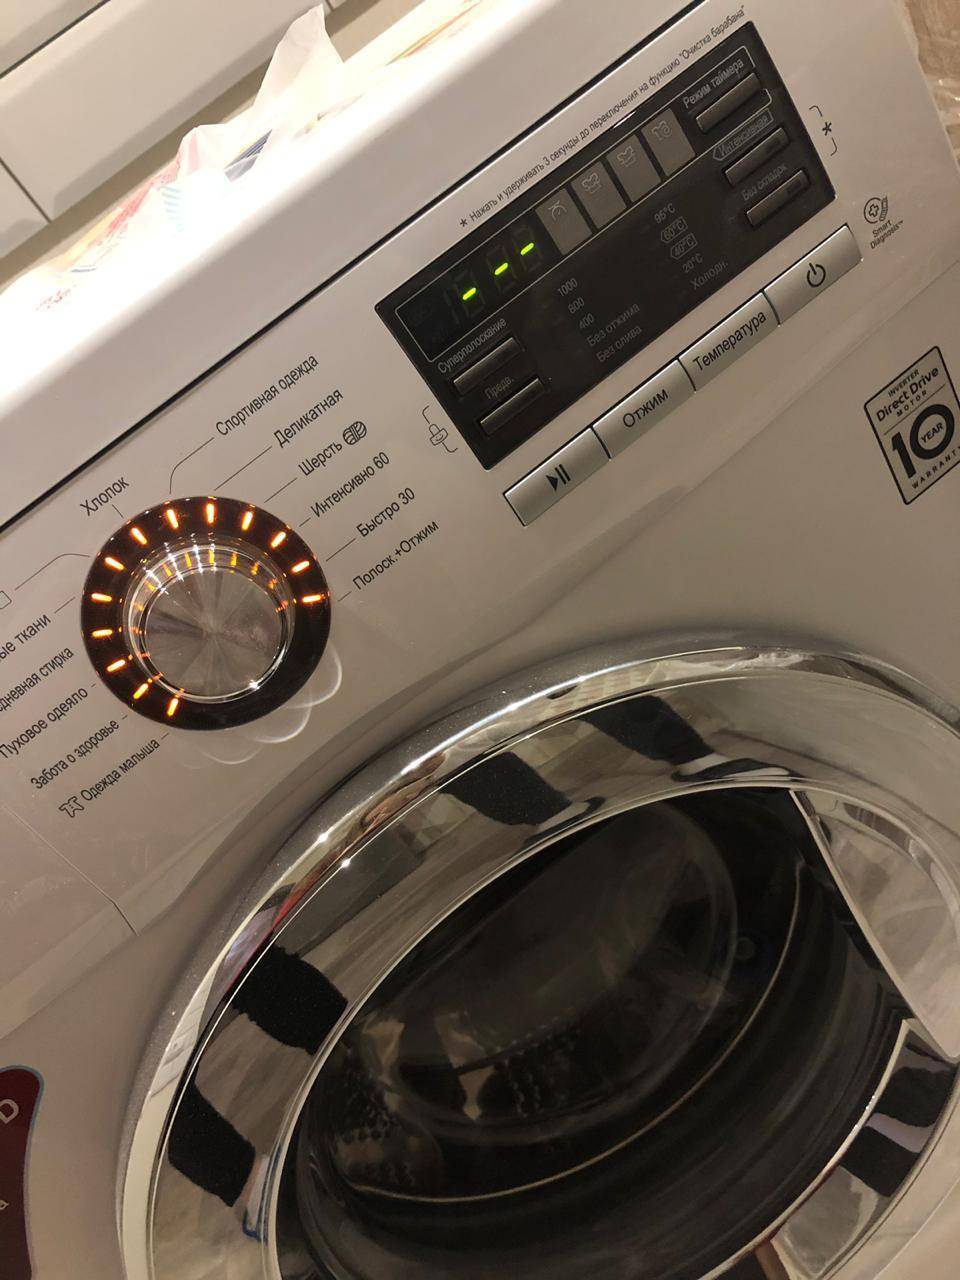 Совмещайте чистоту с комфортом: рейтинг самых тихих стиральных машин